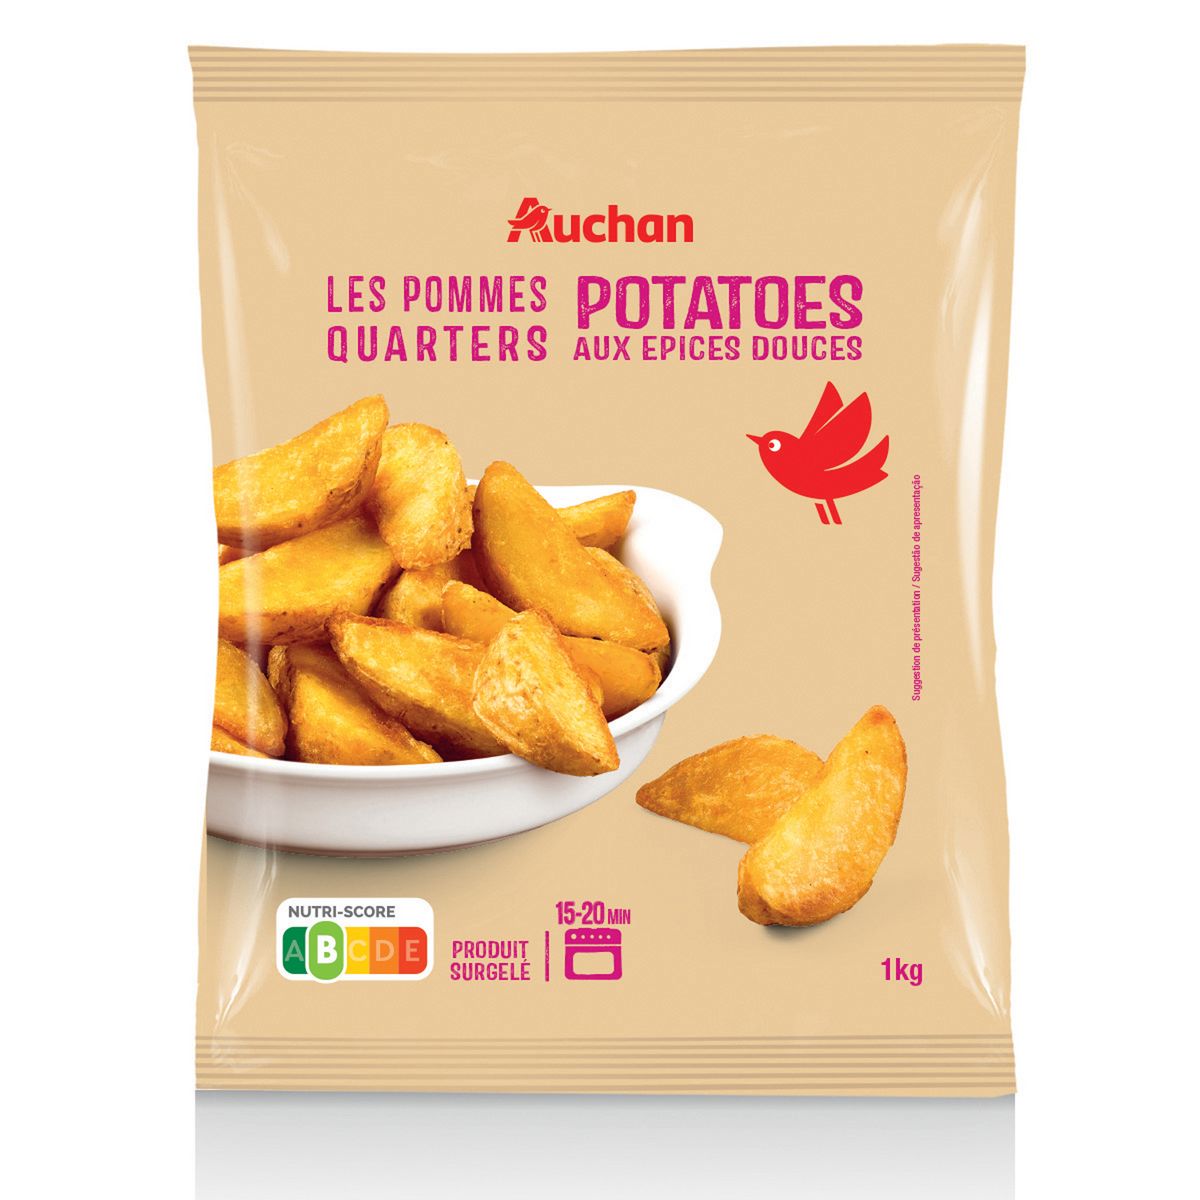 AUCHAN Potatoes aux épices douces 1kg